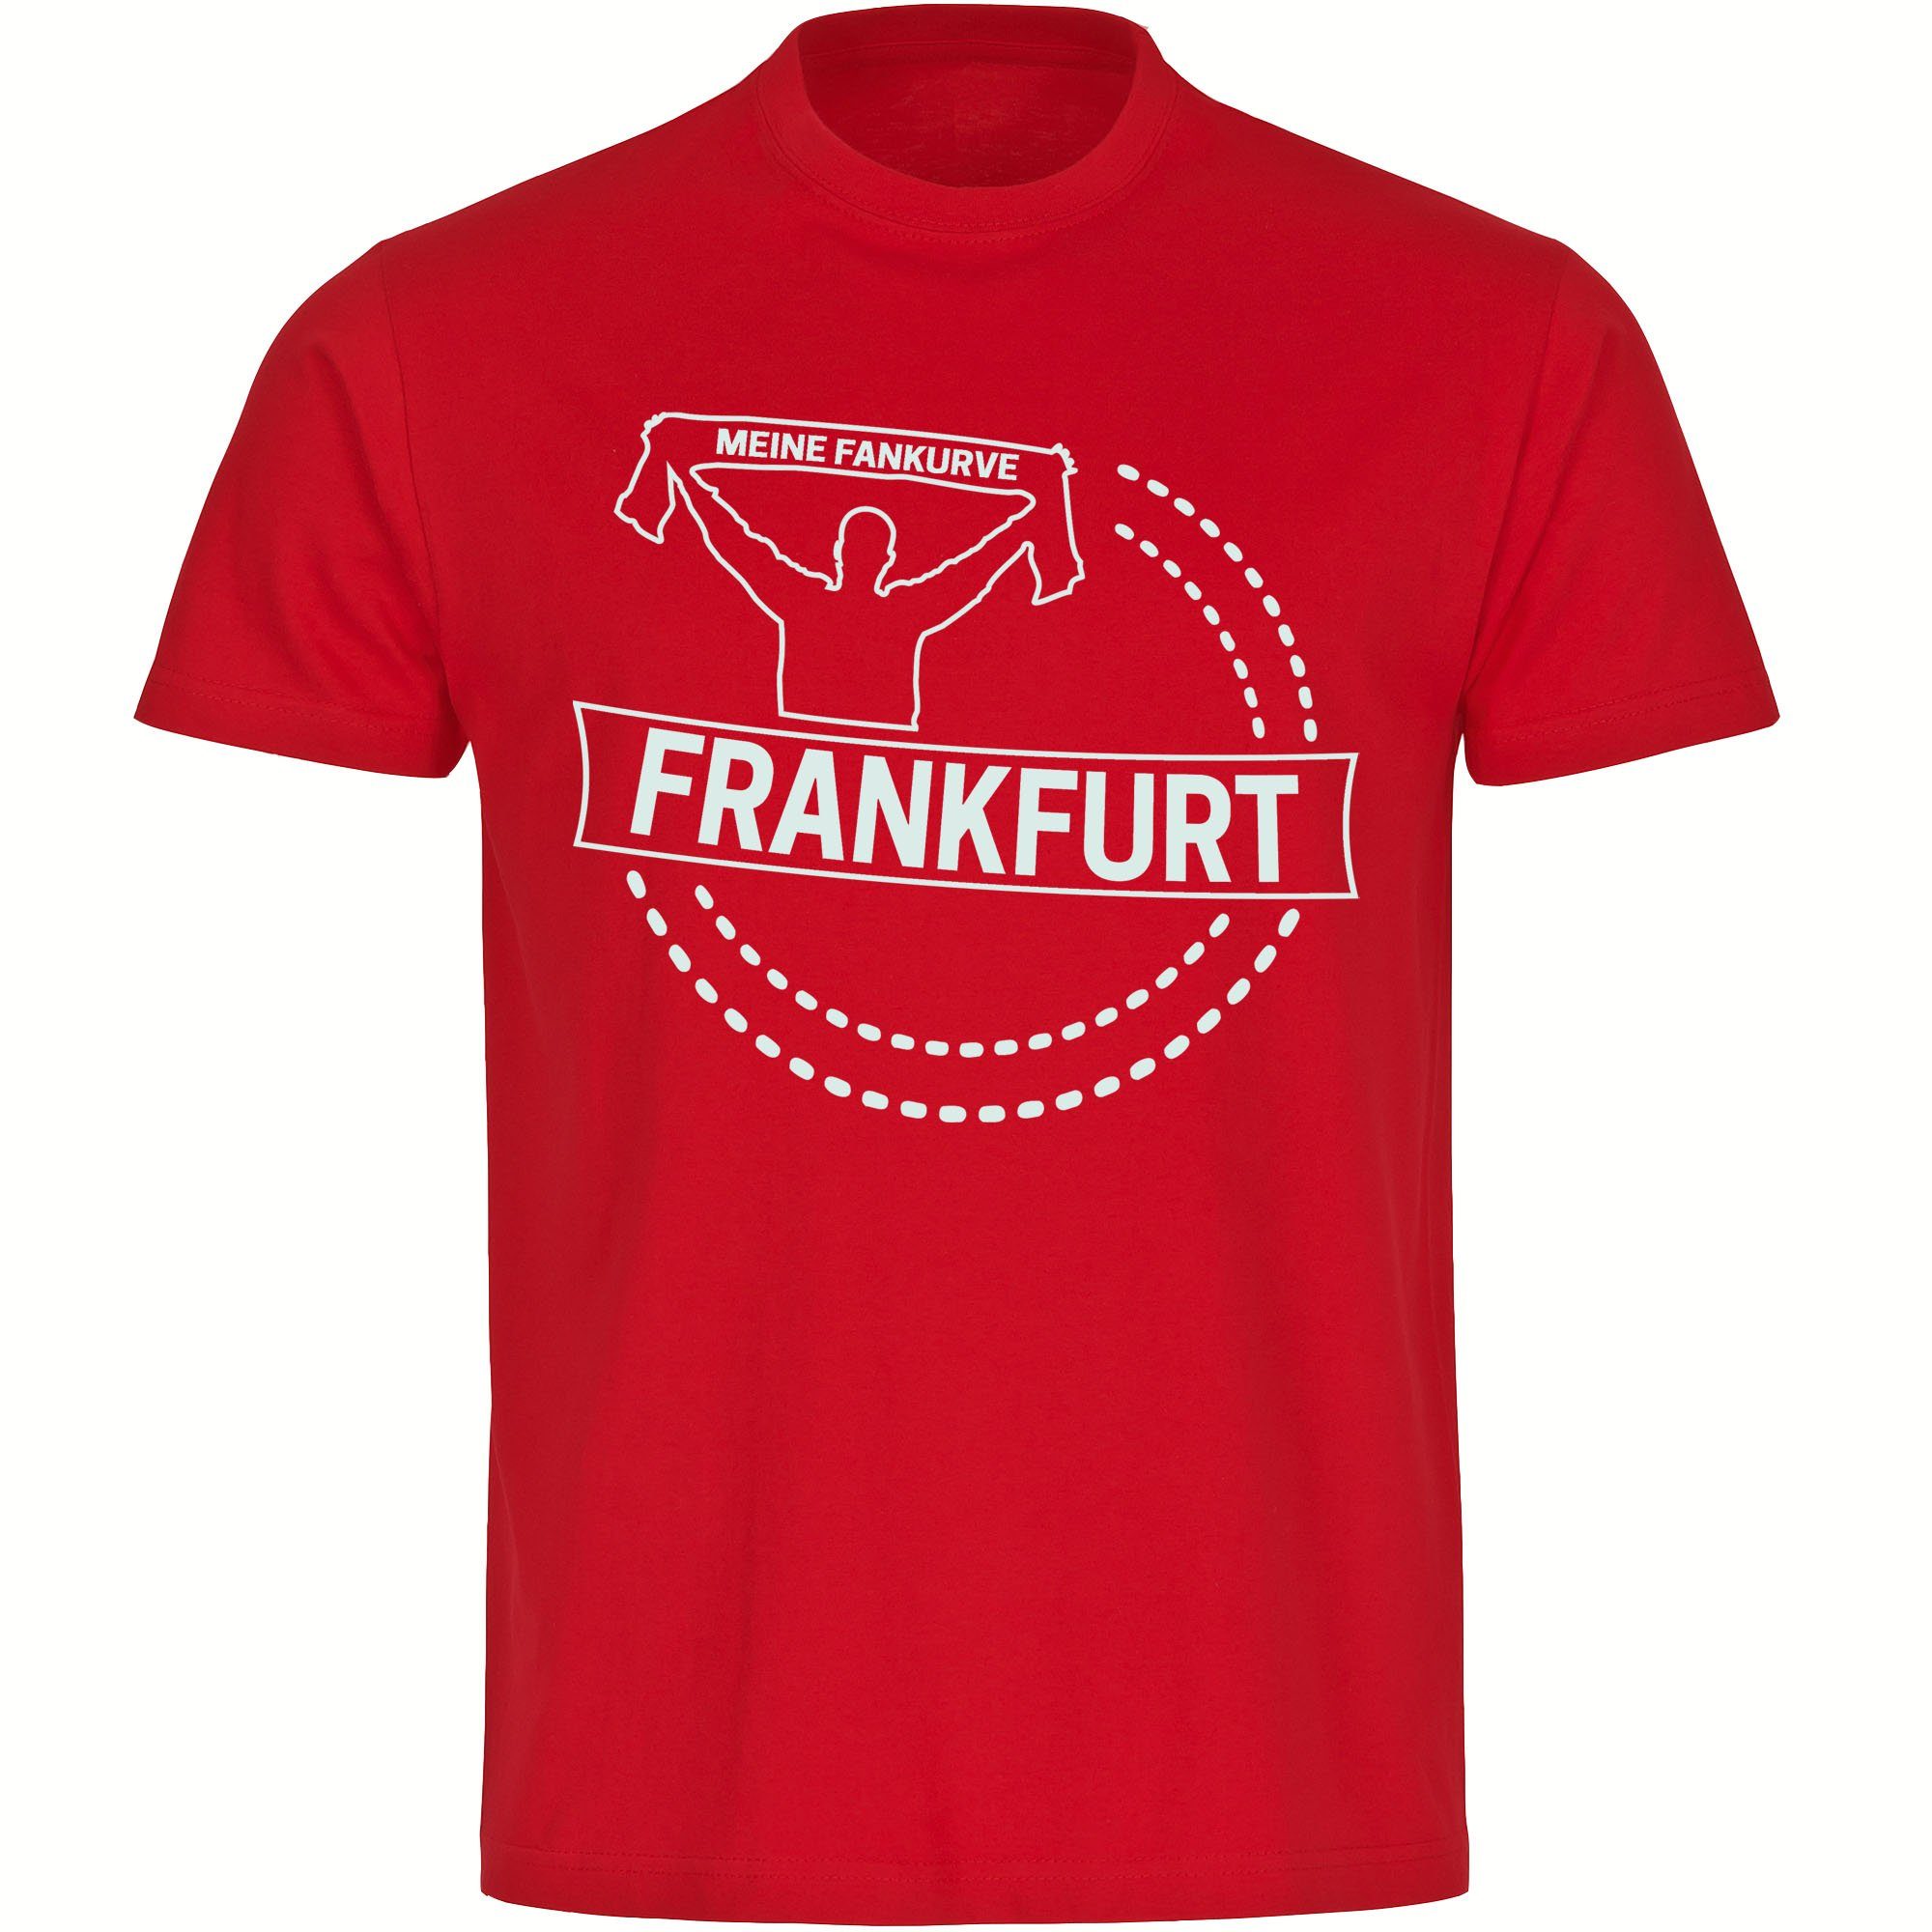 multifanshop T-Shirt Herren Frankfurt - Meine Fankurve - Männer